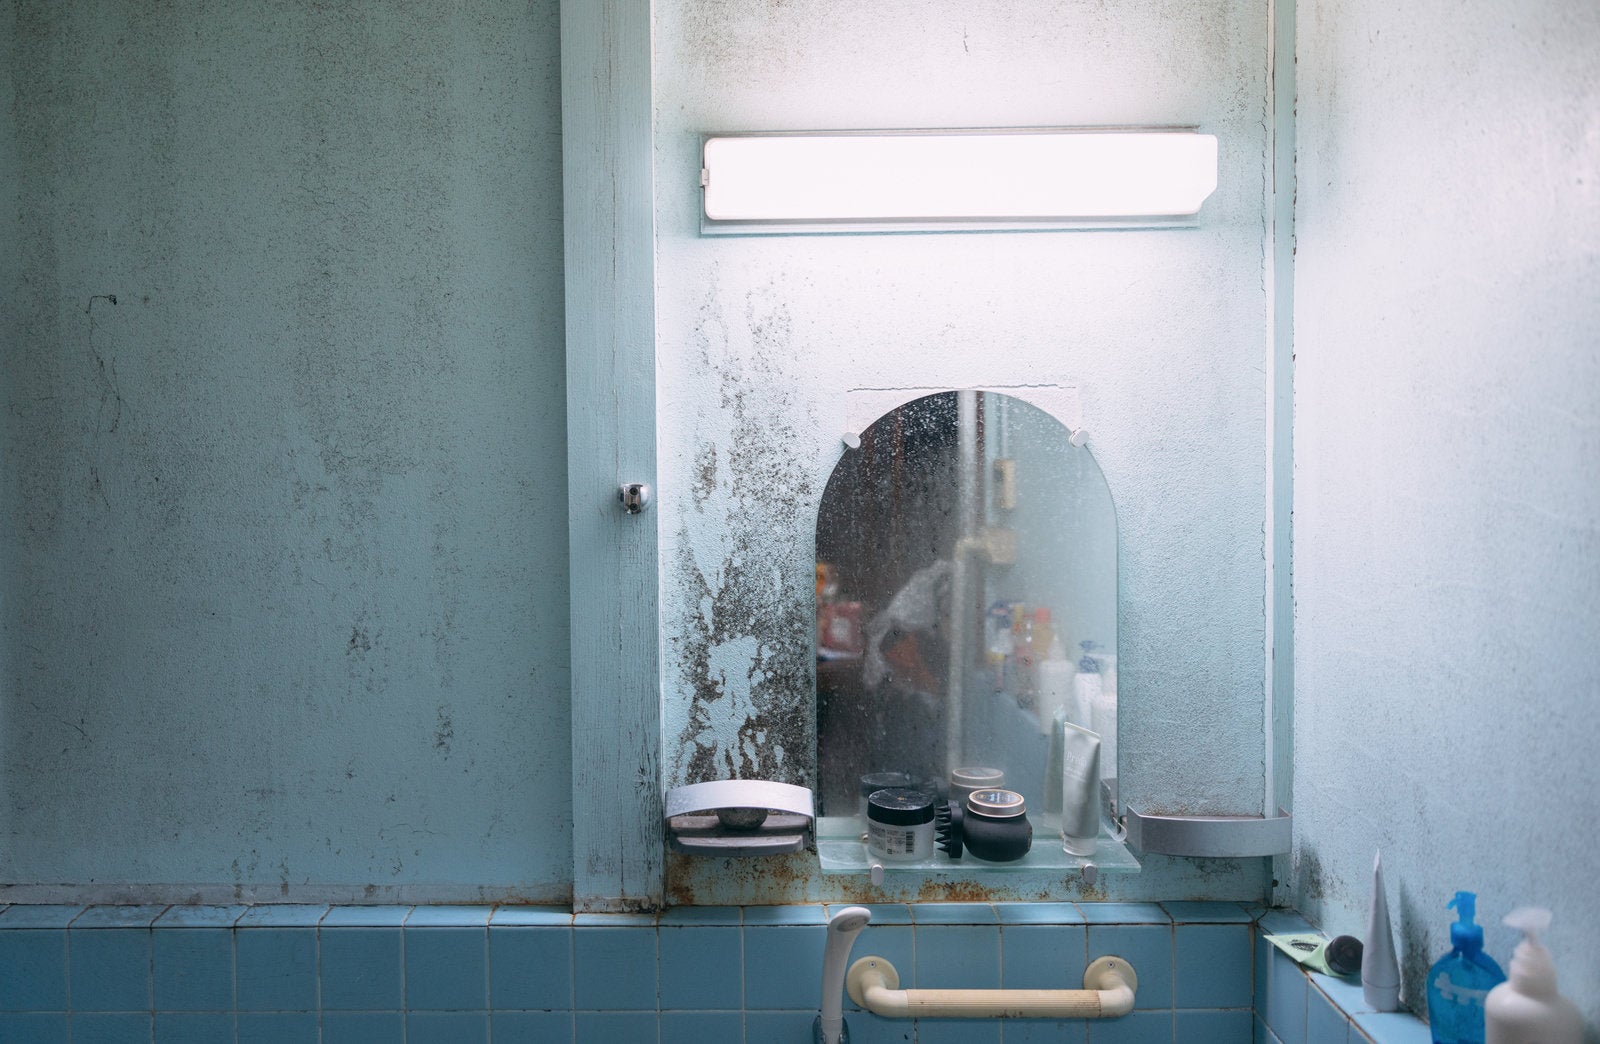 「壁のカビと薄汚れた風呂場の鏡」の写真